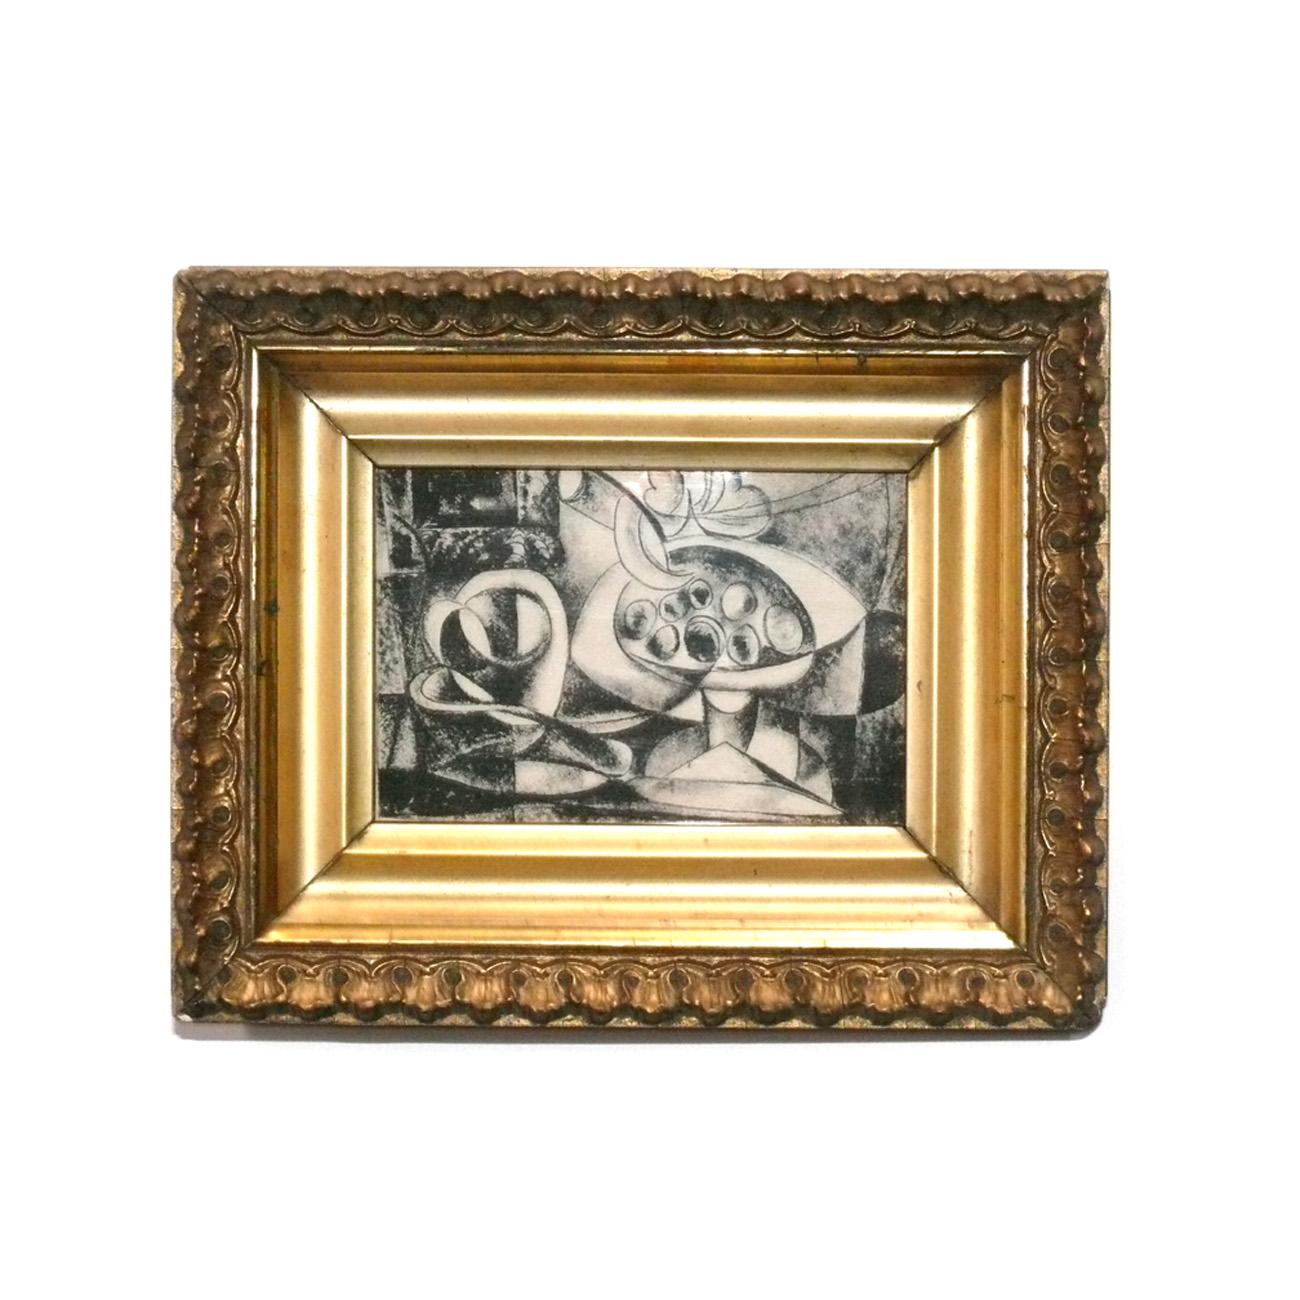 Sélection de tirages en noir et blanc de Pablo Picasso, France, vers les années 1960. Ils ont été récemment encadrés professionnellement dans des cadres dorés d'époque sous verre résistant aux UV. Leur prix est de 350 $ chacun, ou de 1200 $ pour les